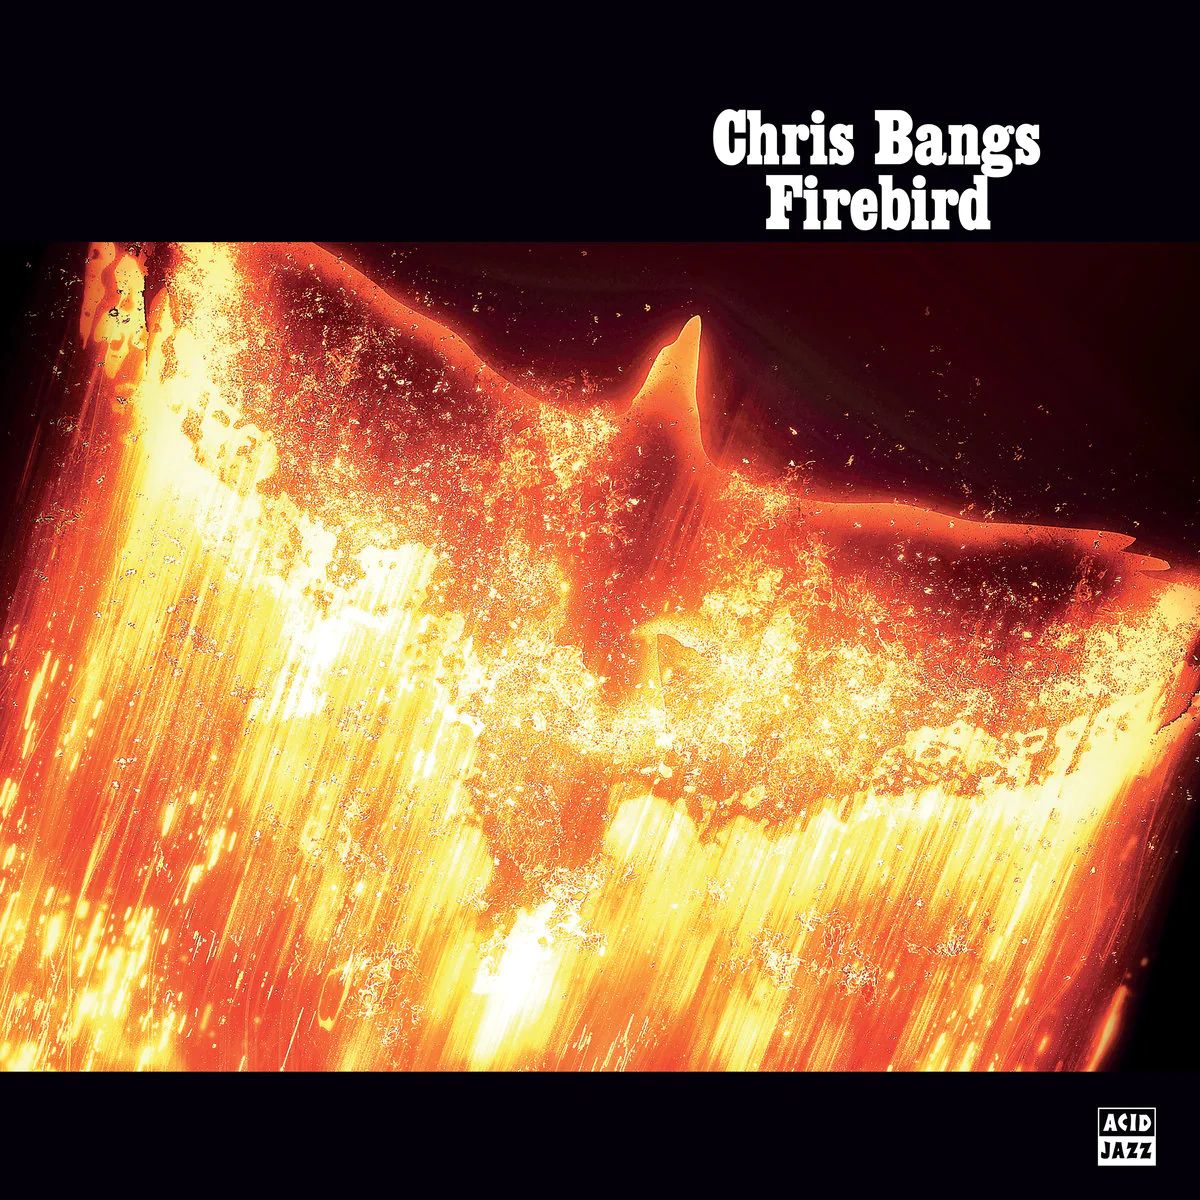 Виниловая пластинка Bangs, Chris, Firebird (0676499066157) виниловая пластинка chris webby still wednesday